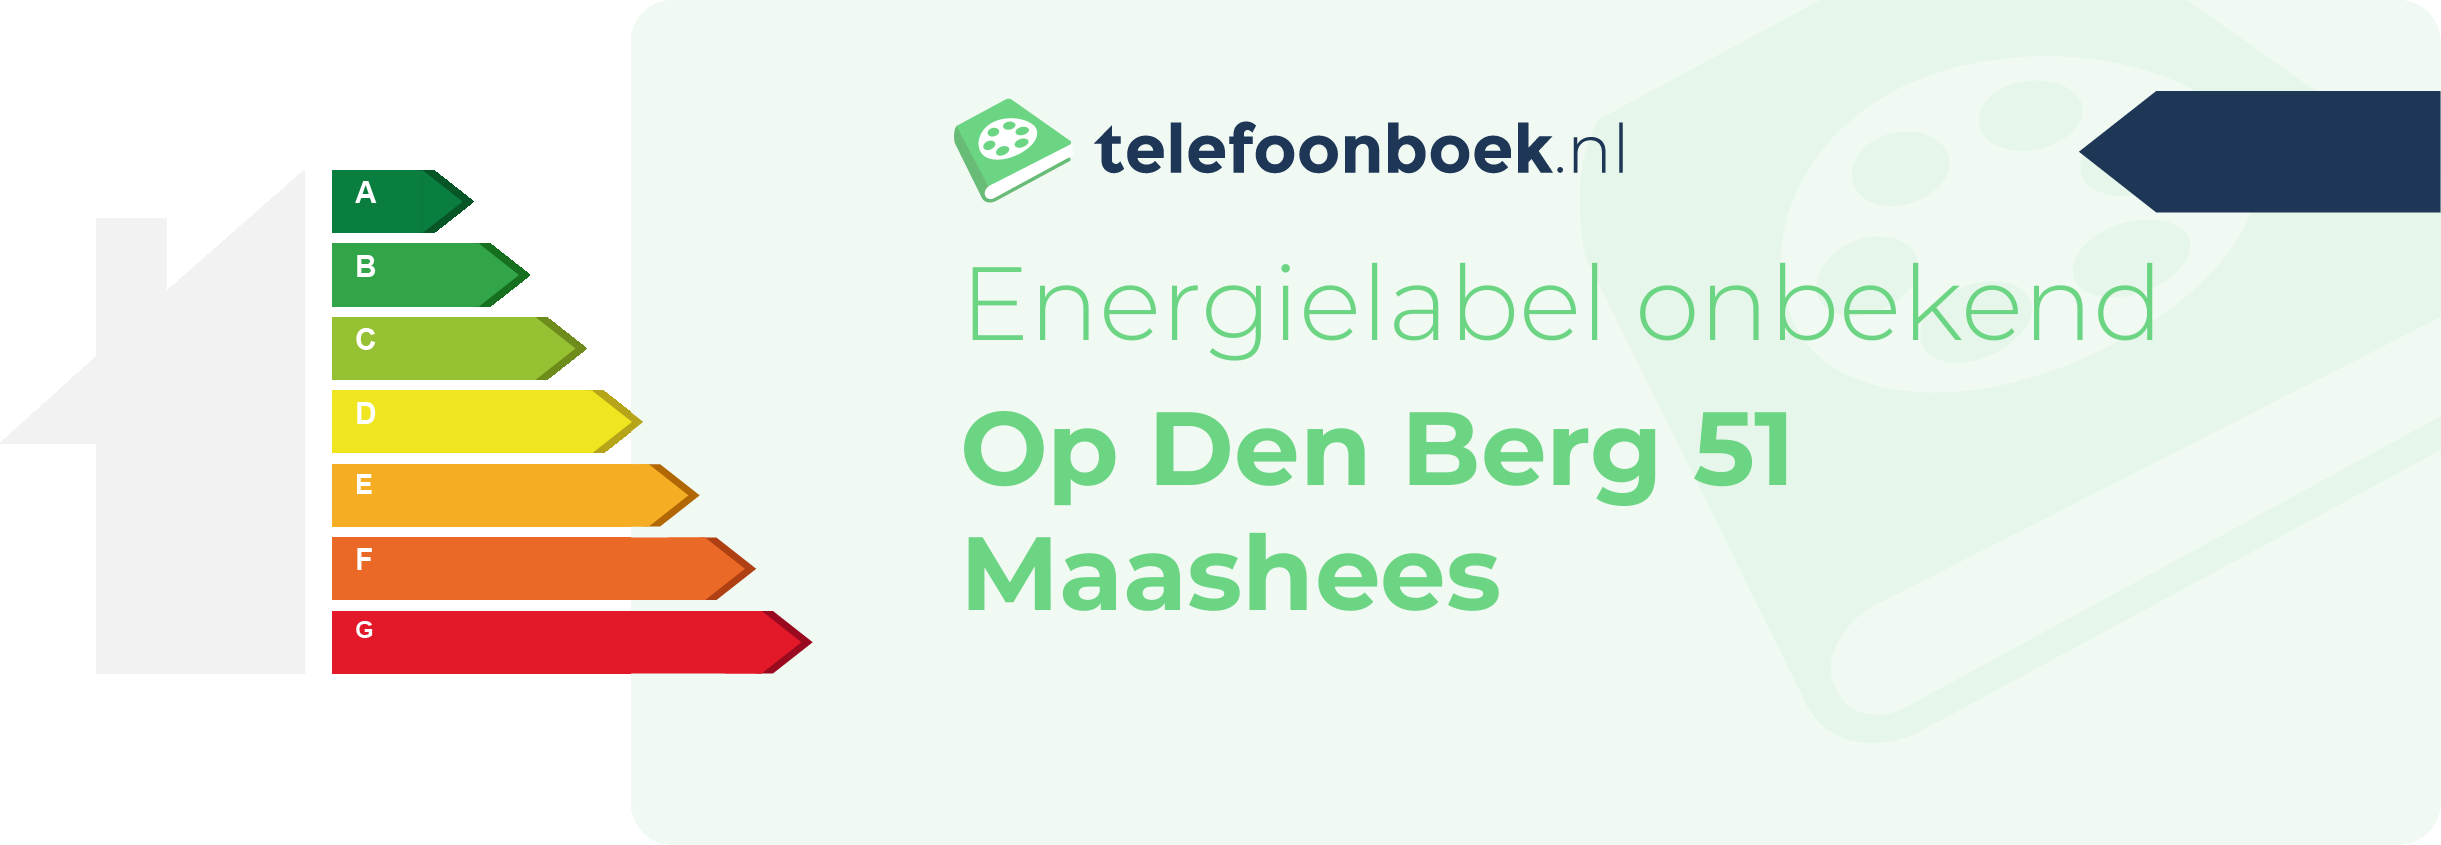 Energielabel Op Den Berg 51 Maashees